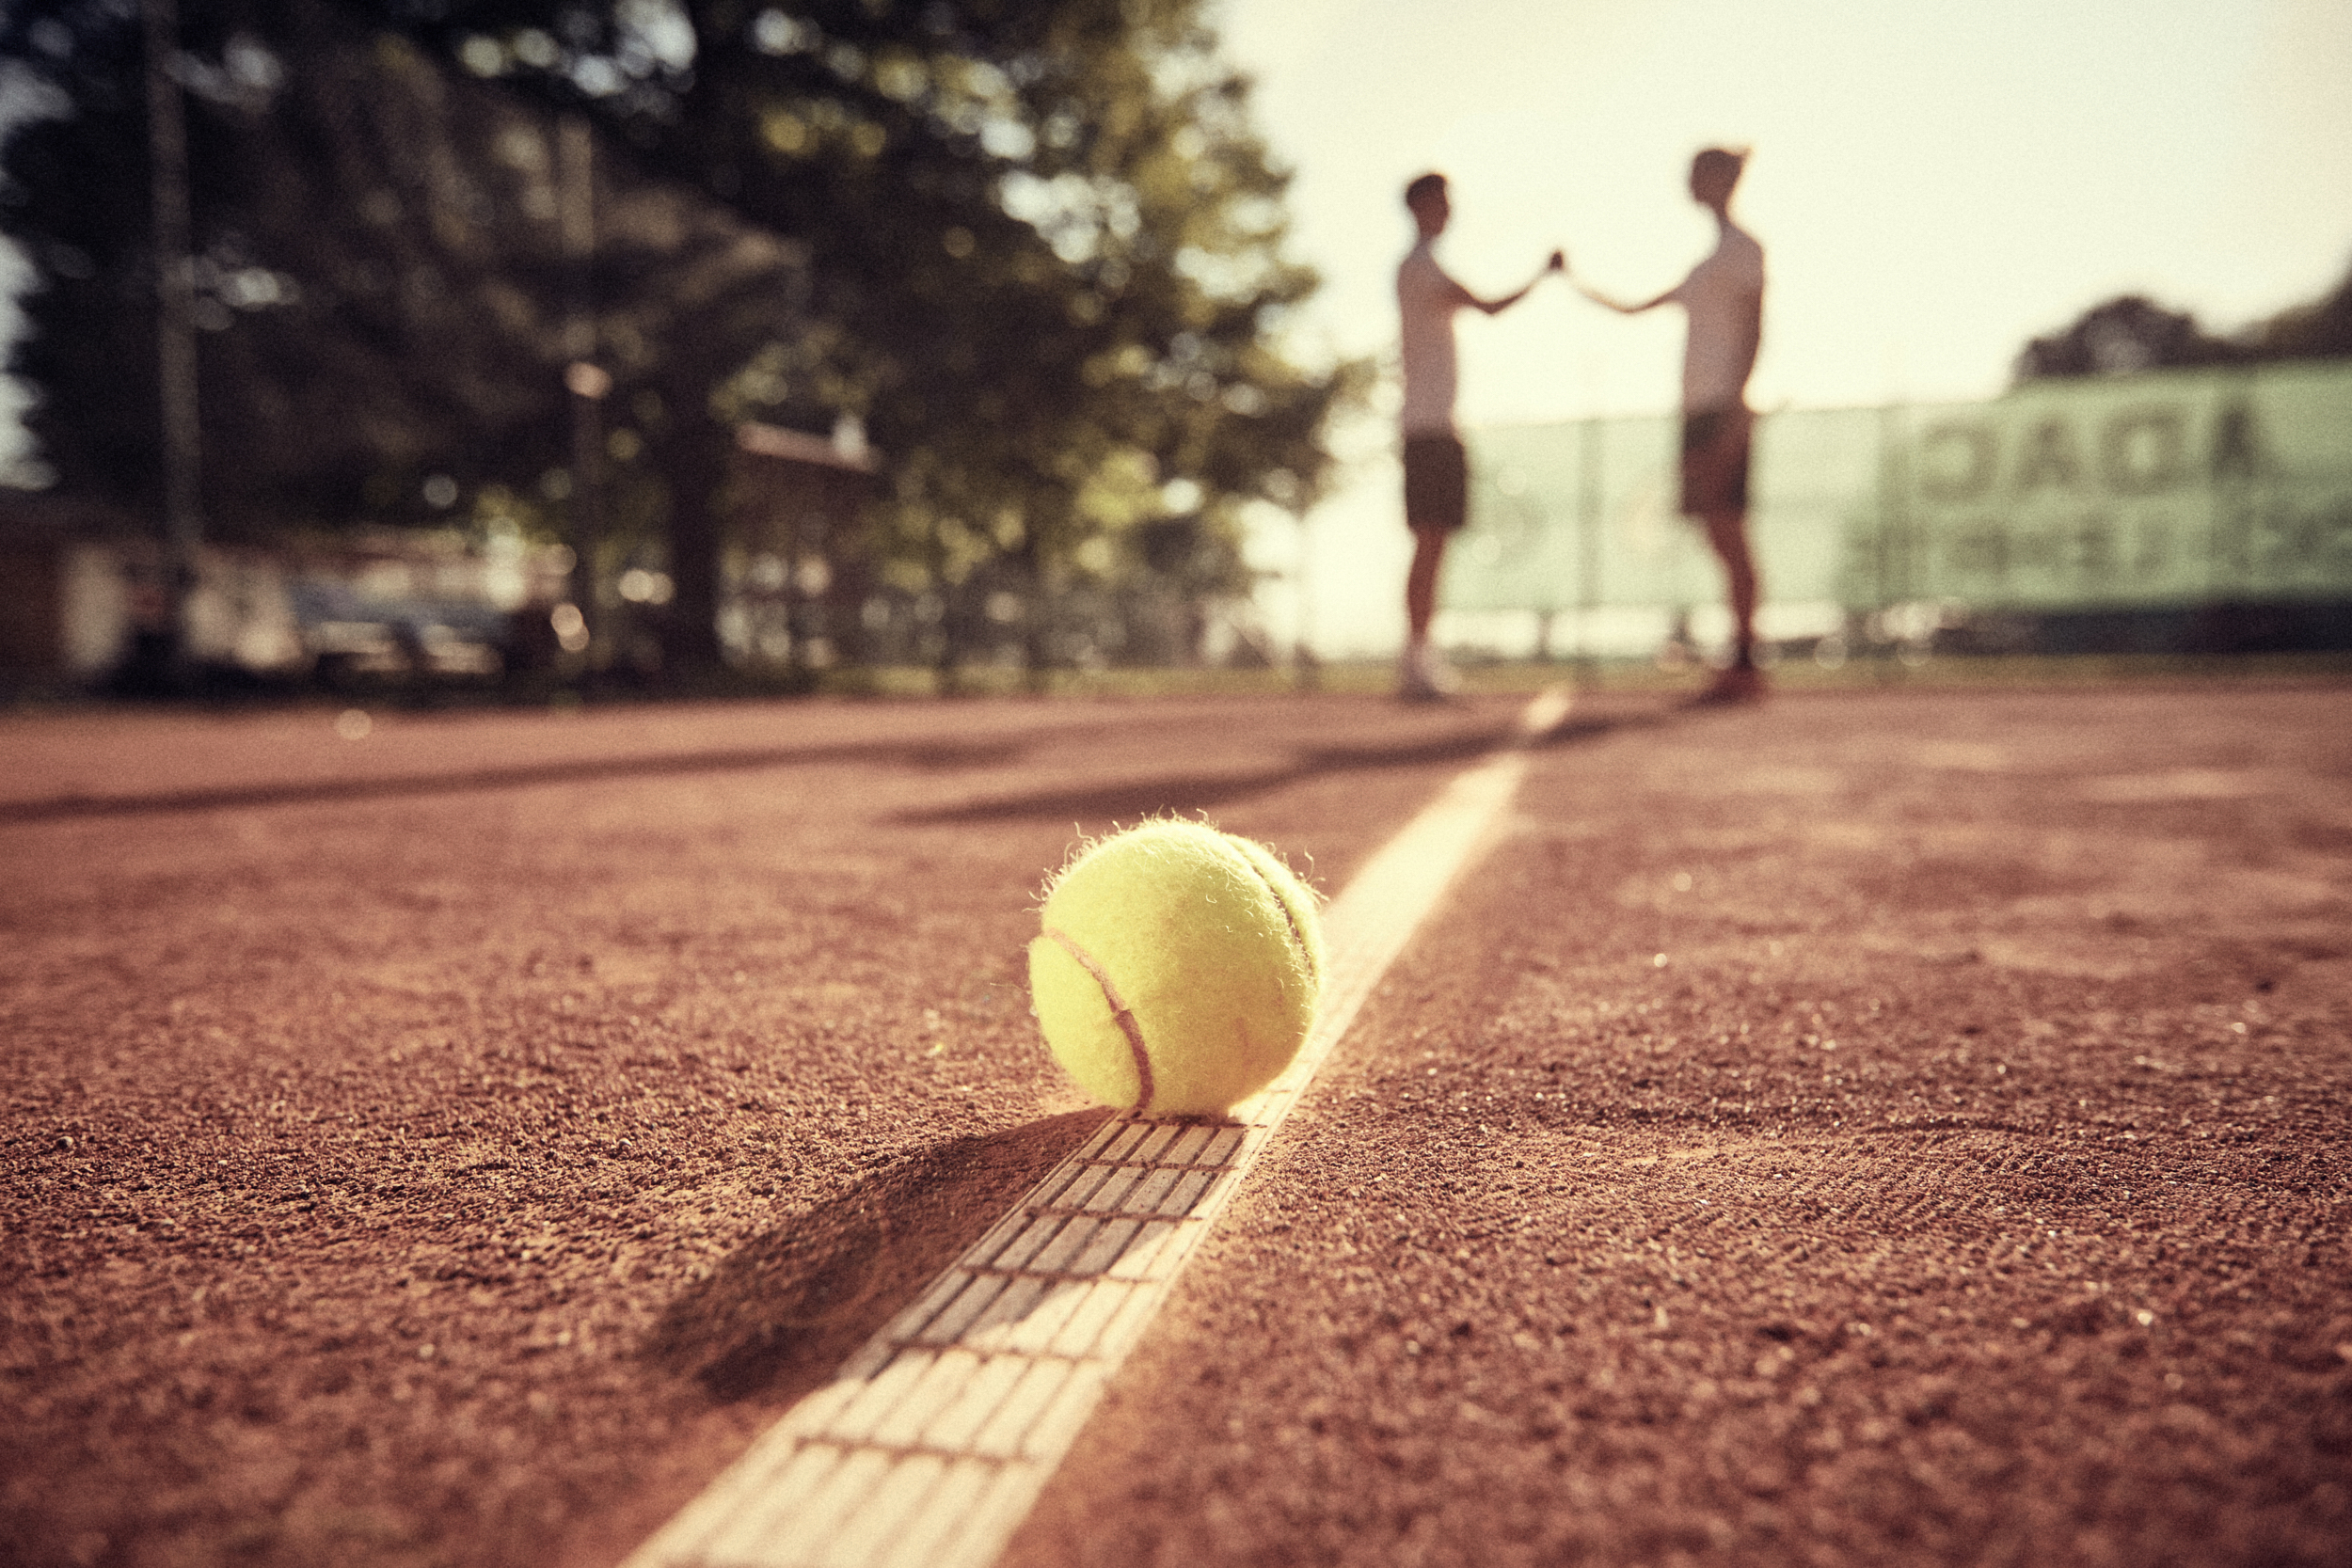 Tennisball auf Tennisplatz mit Trainer im Hintergrund